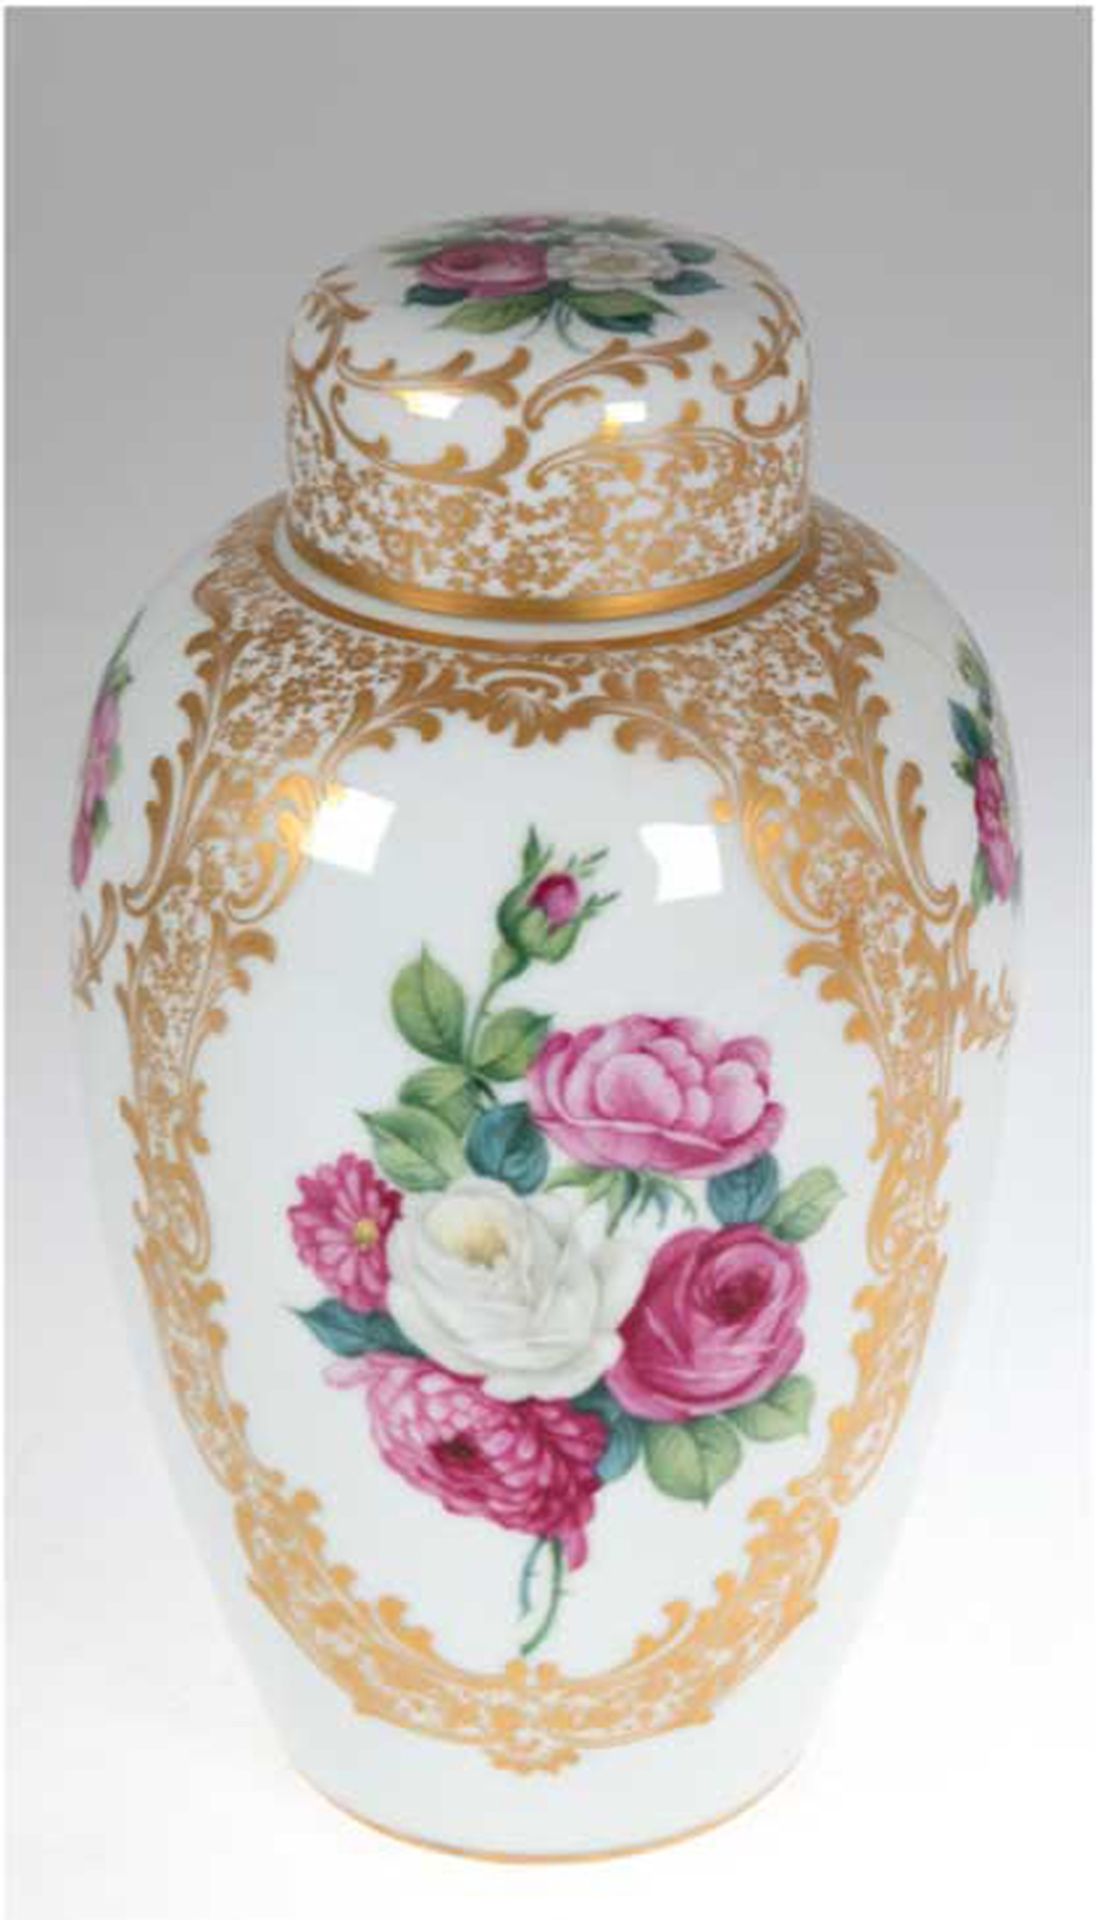 Deckelvase, Rosenthal Kunstabt., gebaucht, polychrome Floralmalerei in goldgerahmten Kartuschen, si